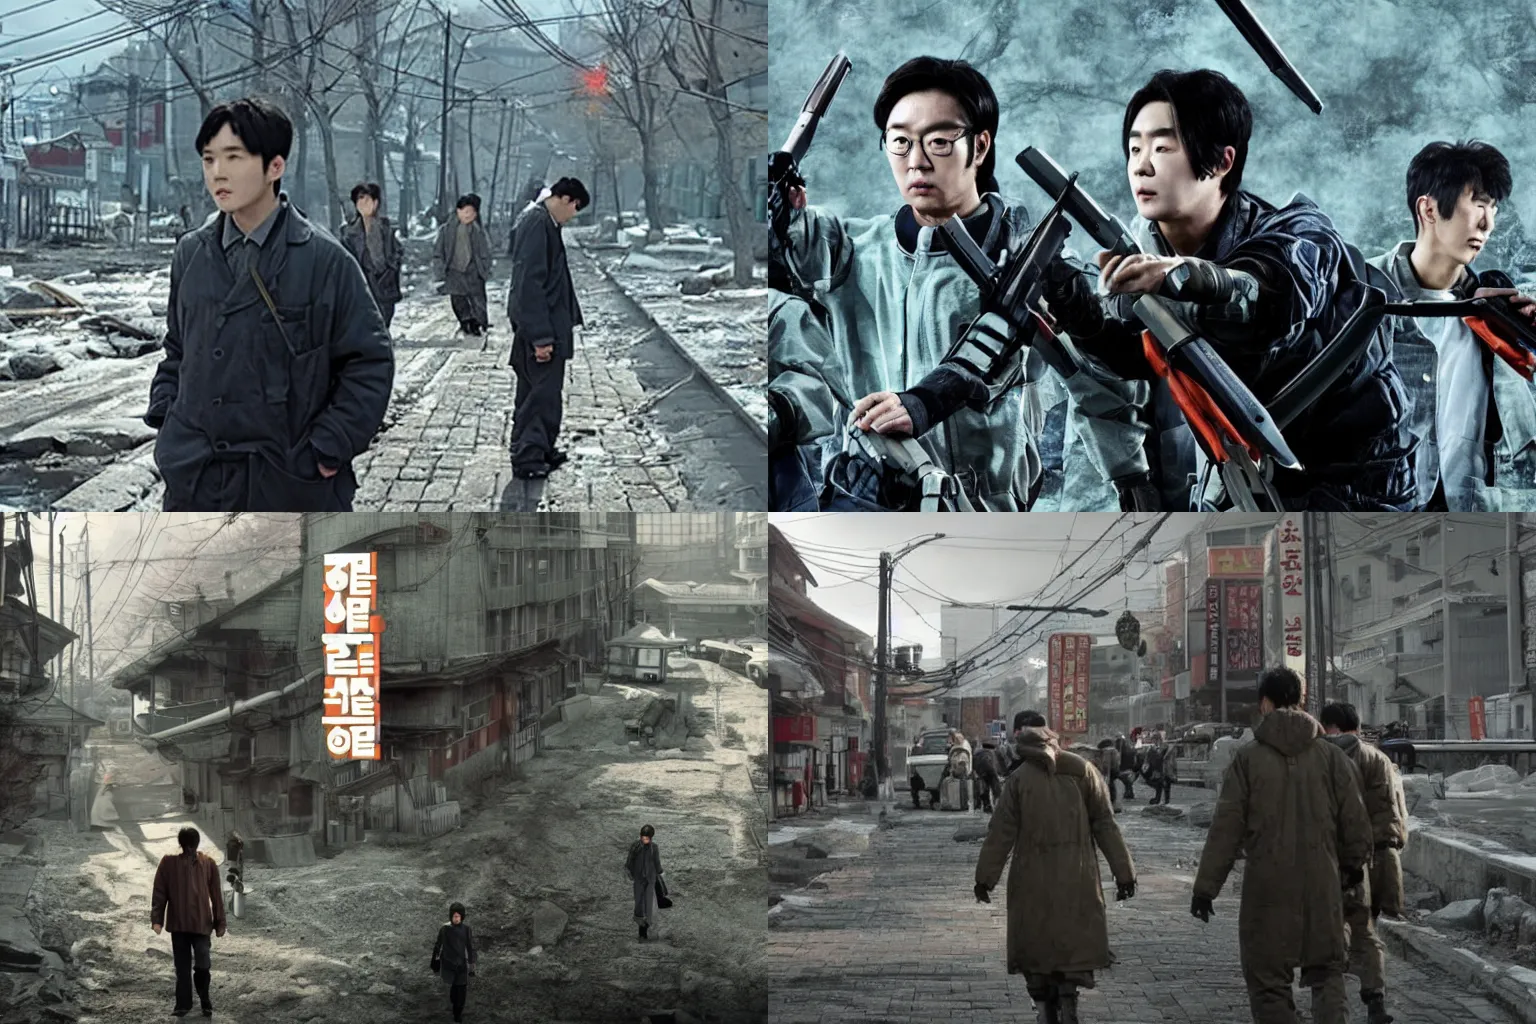 Prompt: korean film still from korean adaptation of half-life 2